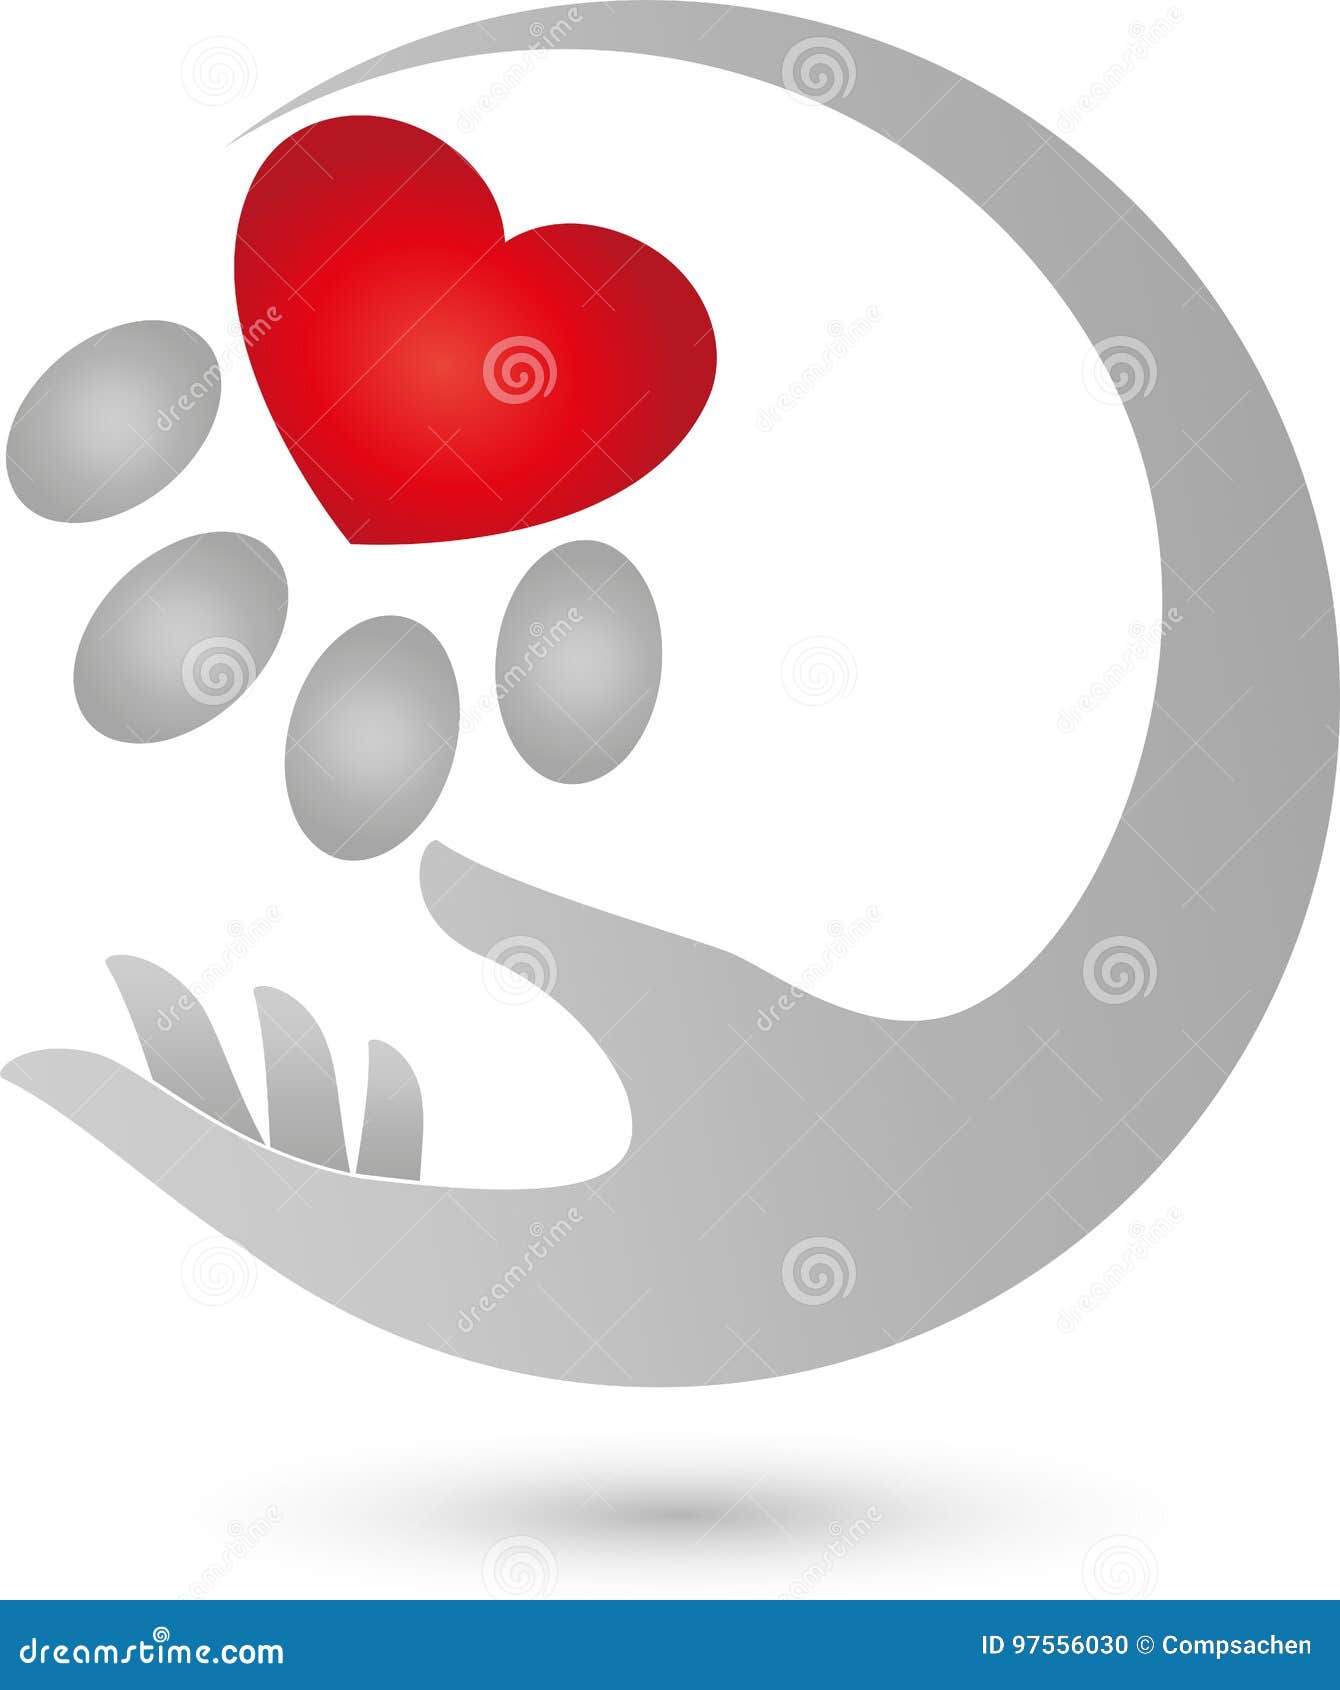 Patte Du S De Chat Avec Le Coeur Et La Main Coeur Pour Le Logo De Chats Illustration De Vecteur Illustration Du Leopard Celebrez